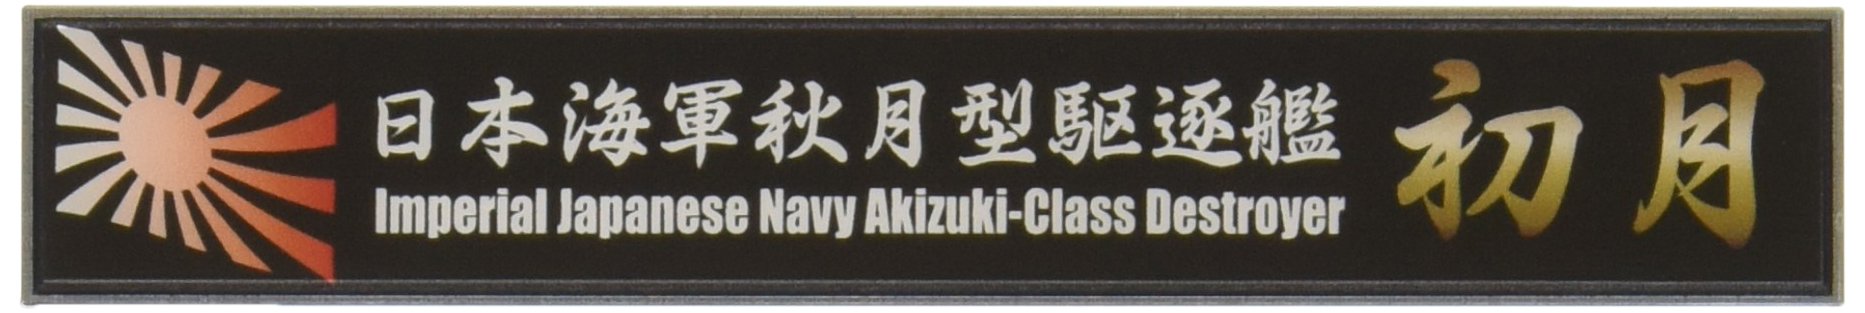 FUJIMI Ship Name Plate Series No.34 Ijn Akizuki-Class Destroyer Hatsuzuki